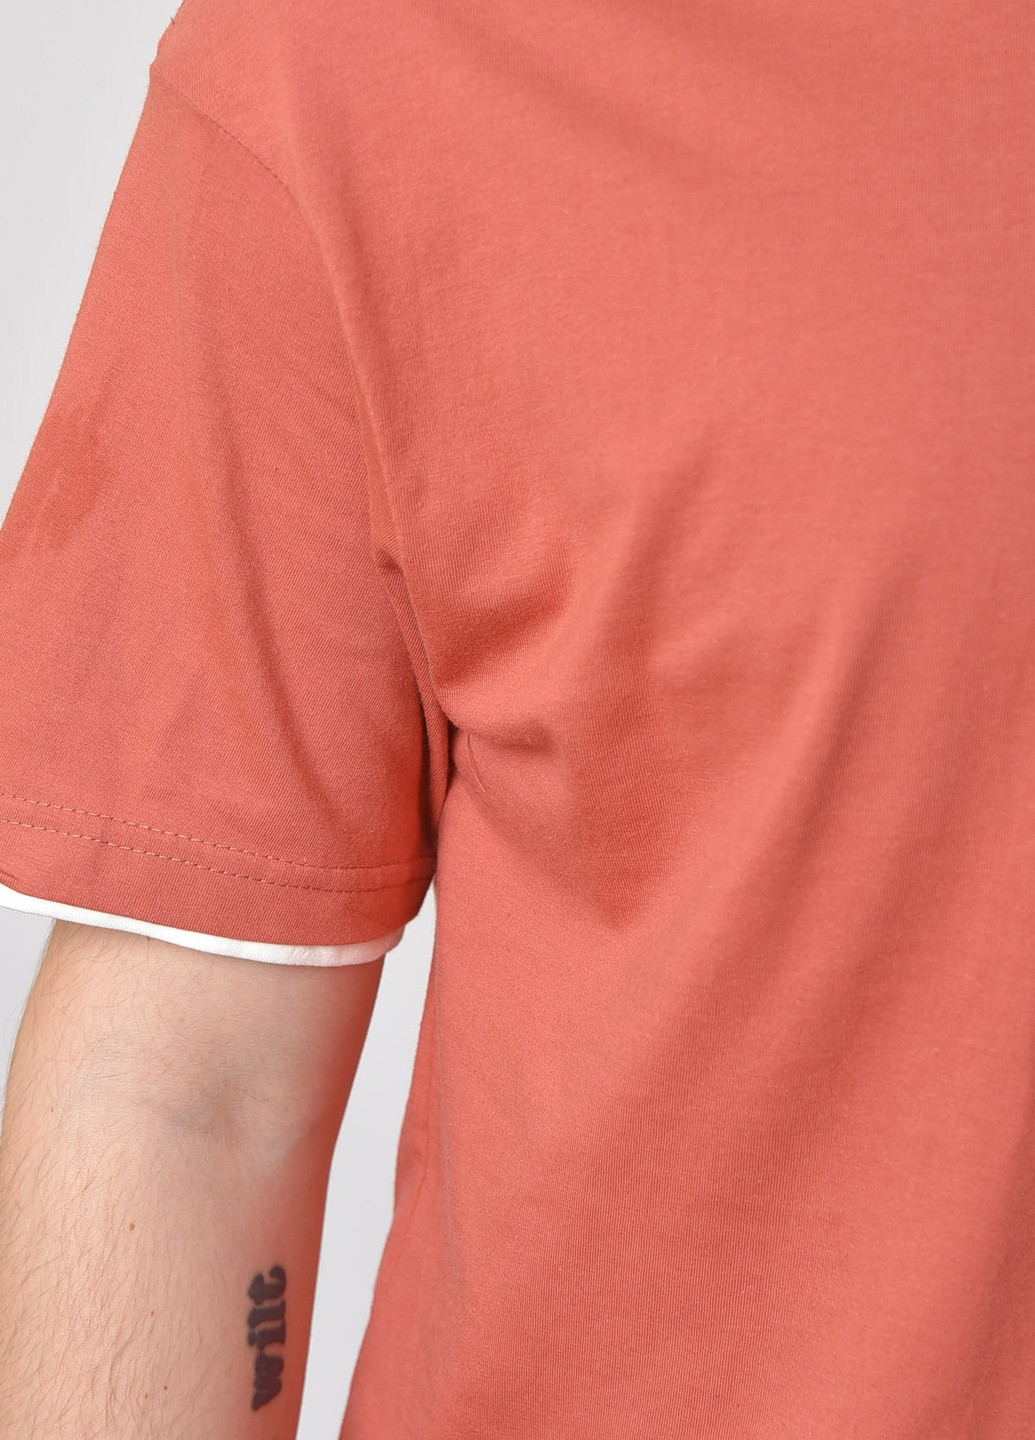 Теракотова футболка чоловіча однотонна теракотового кольору Let's Shop